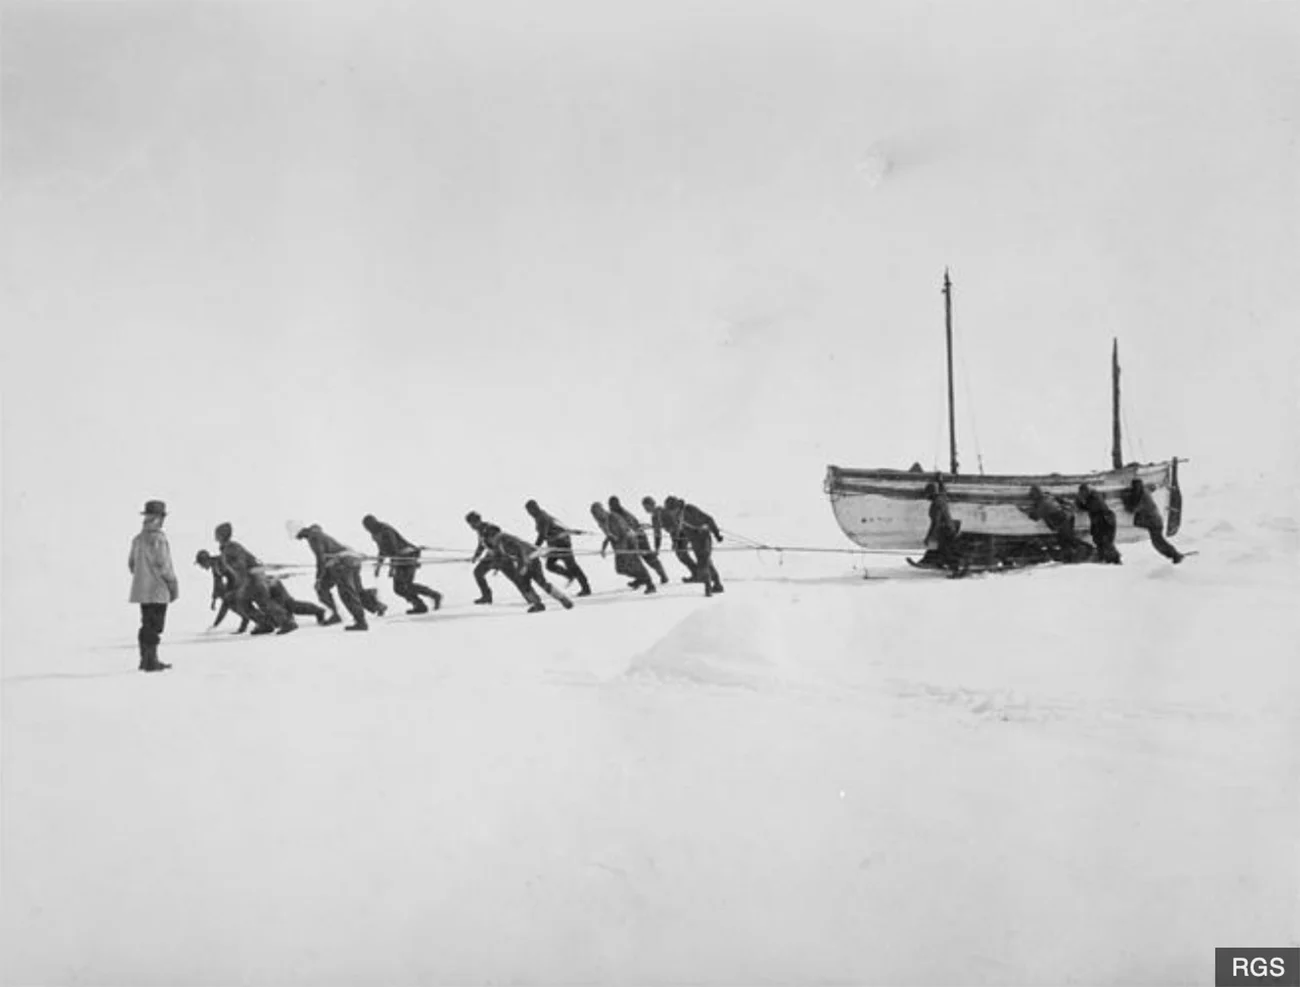 imagem da tripulação de puxando um bote na banquisa de gelo